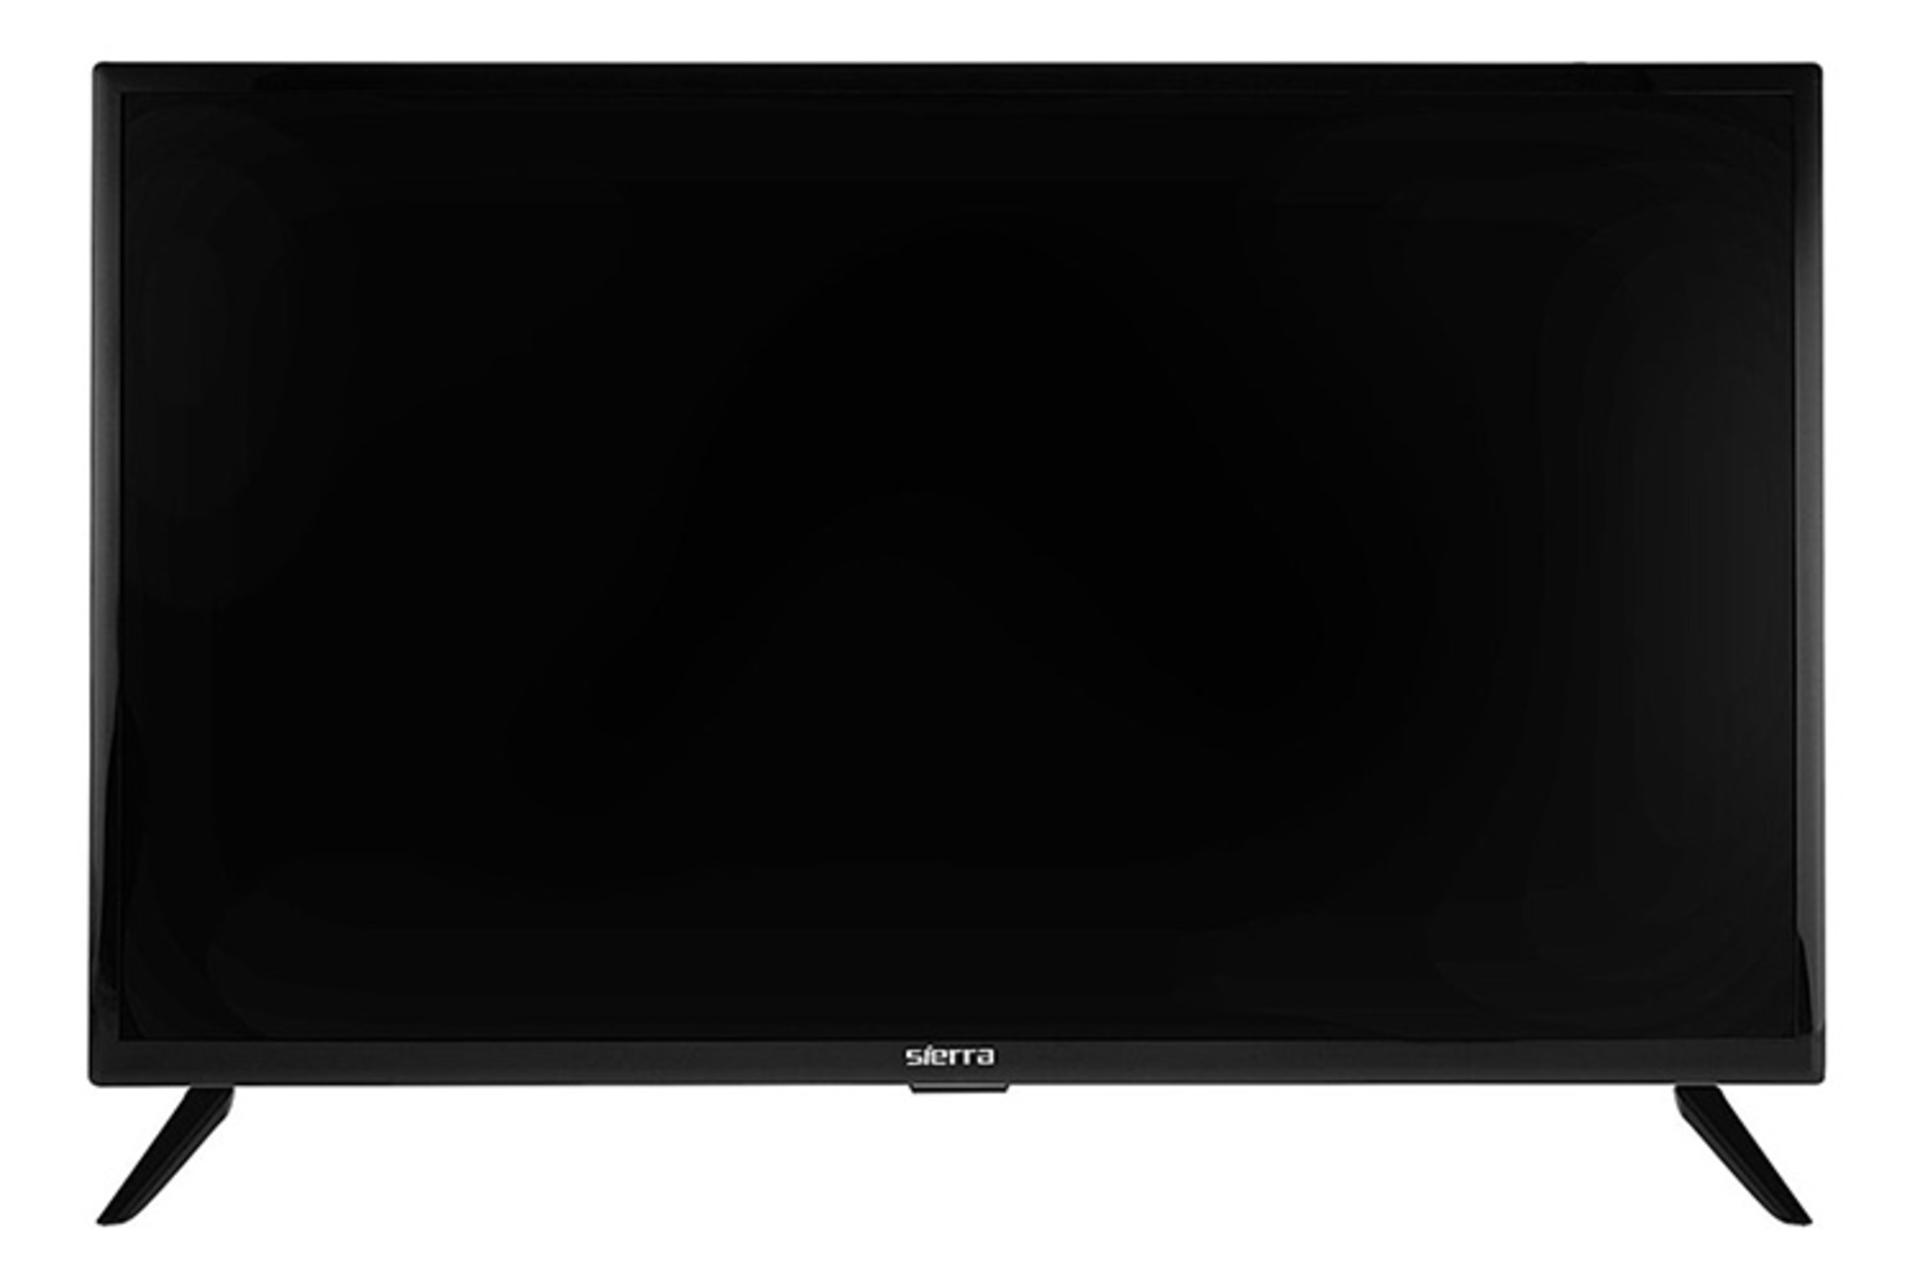 نمای جلو تلویزیون سیرا SR-LE32501 مدل 32 اینچ با صفحه خاموش